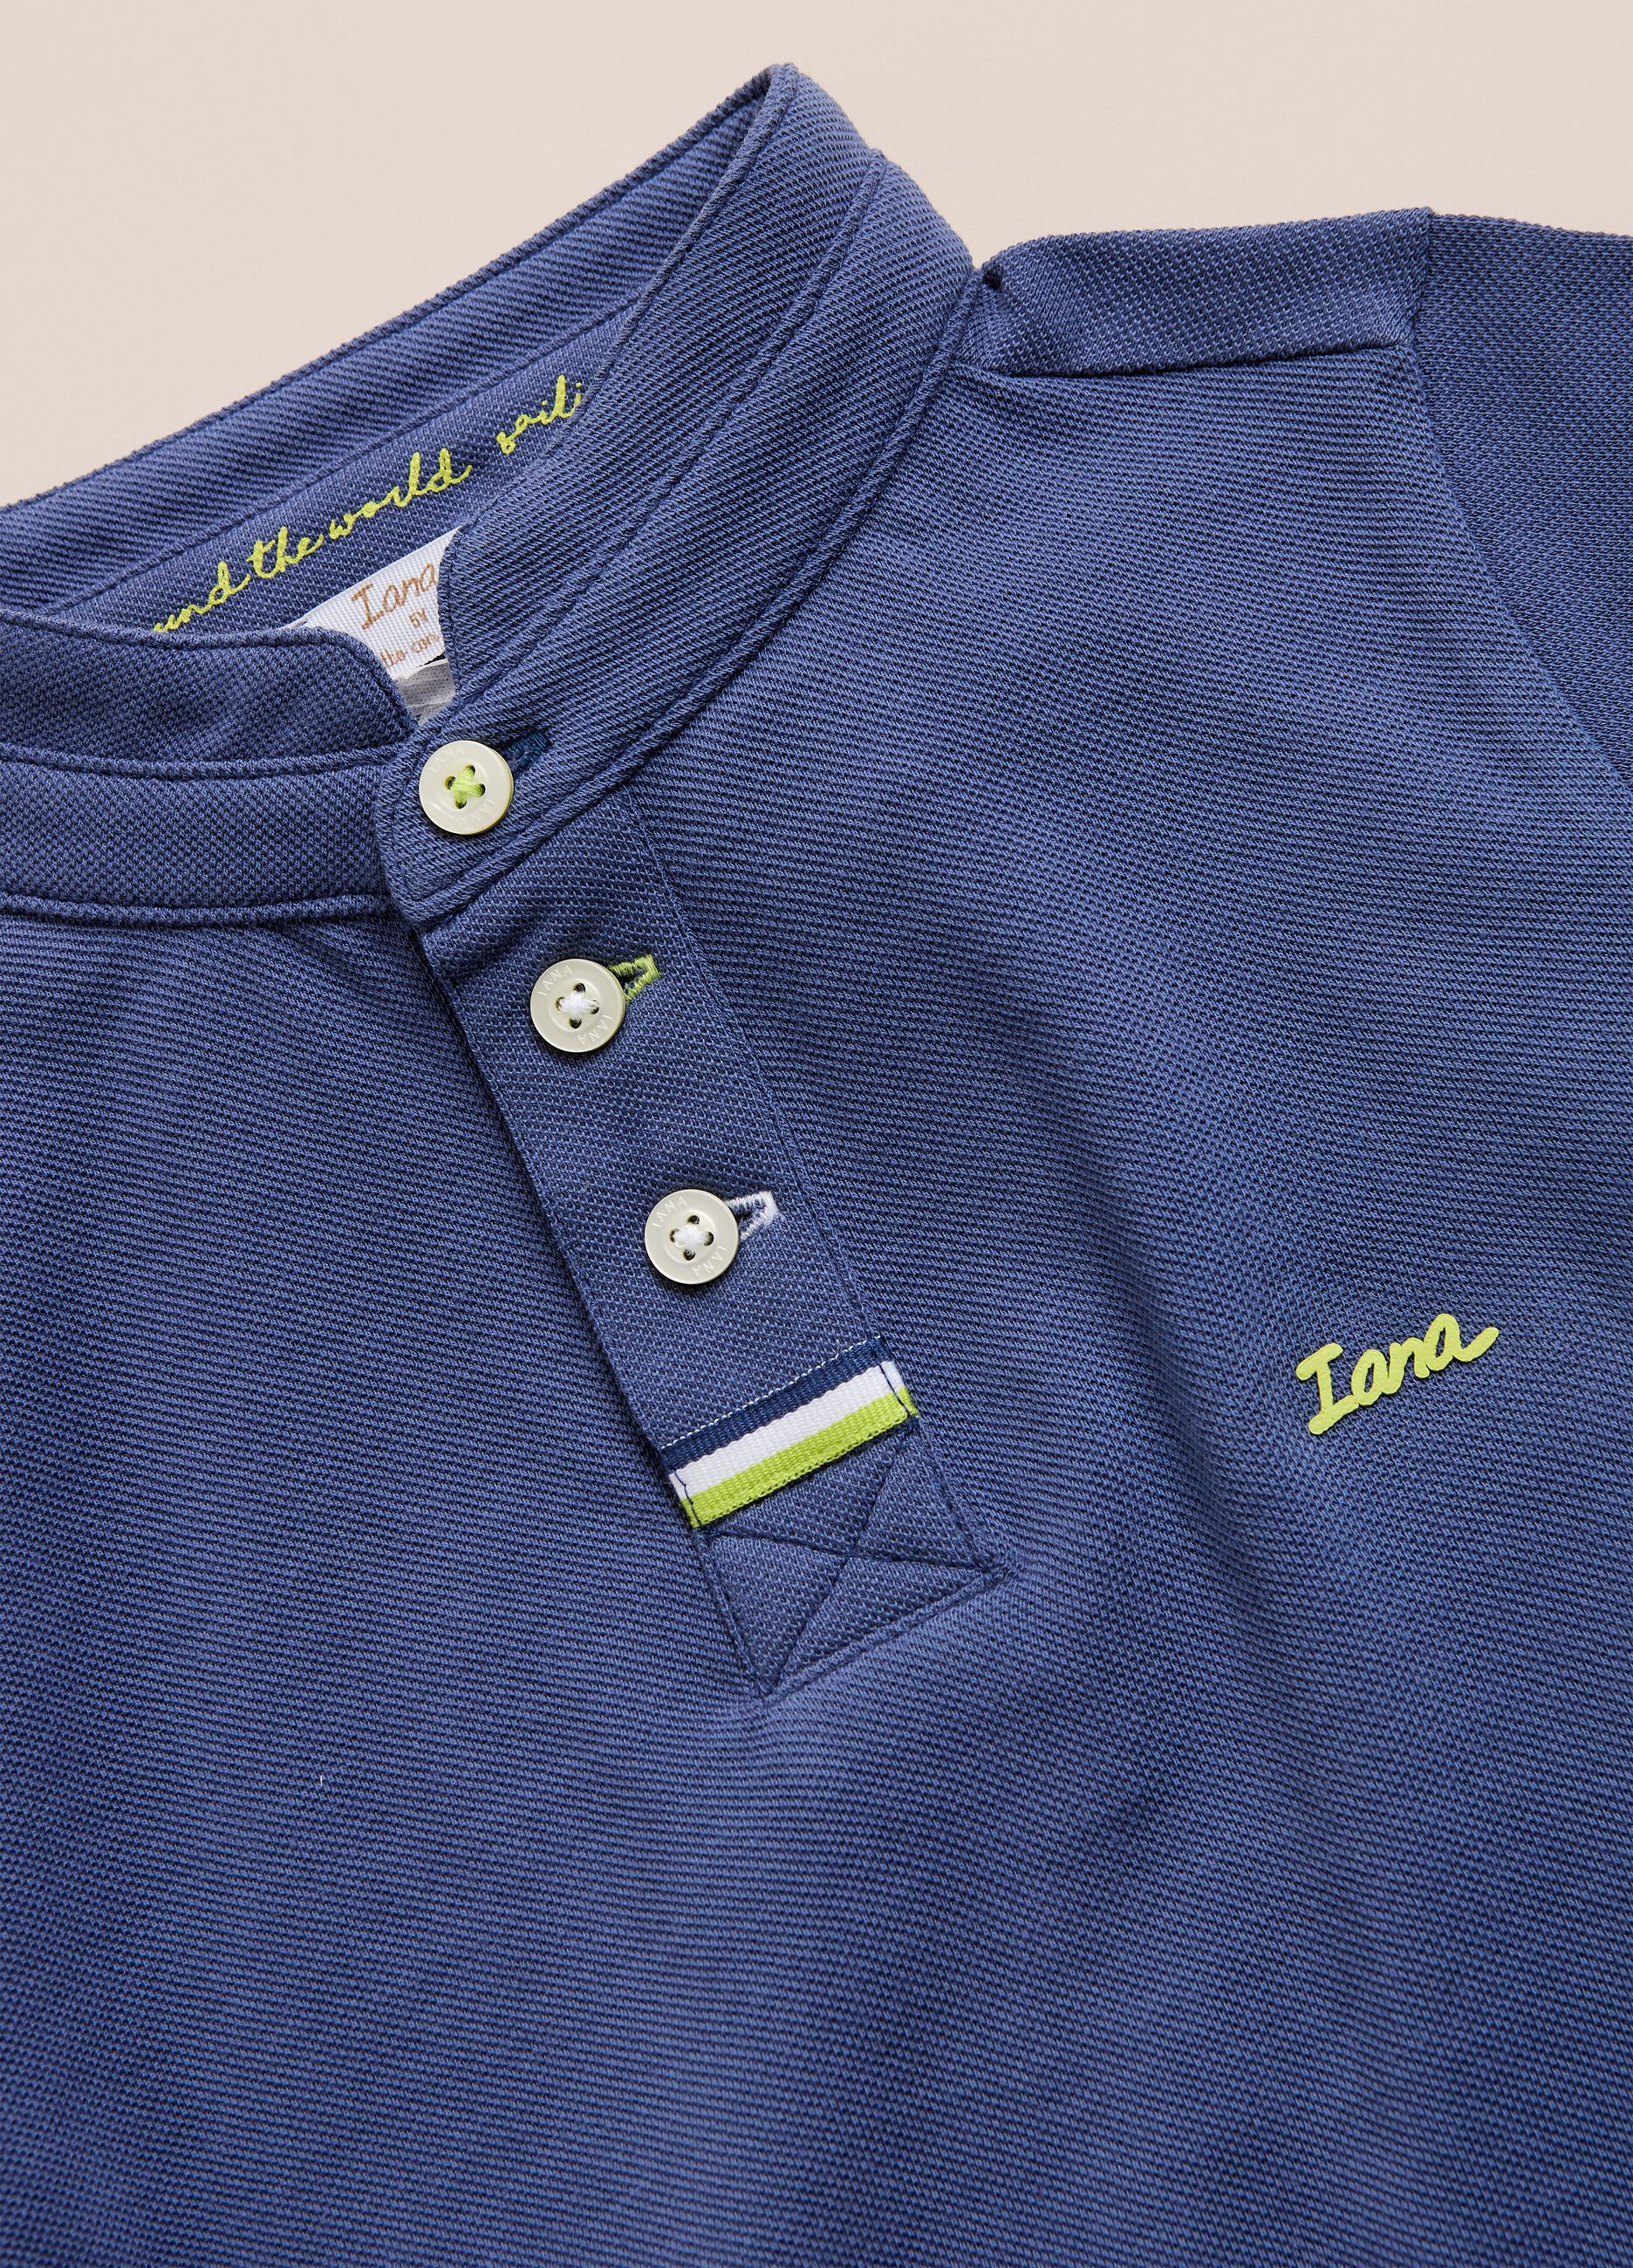 IANA 100% cotton pique polo shirt with mandarin collar.